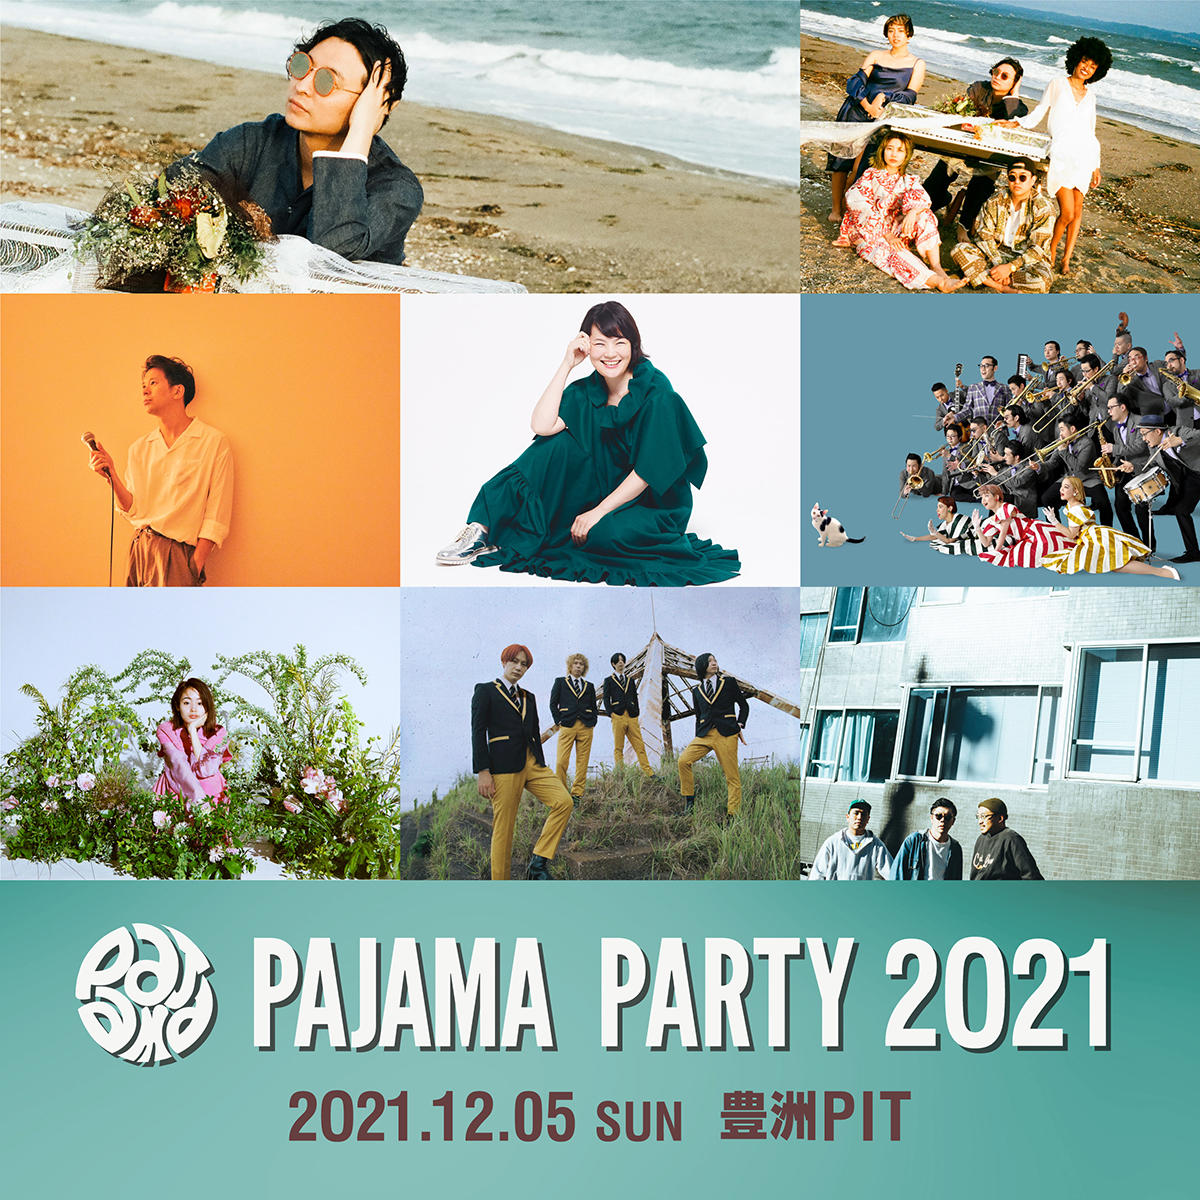 pajamaparty2021.jpg